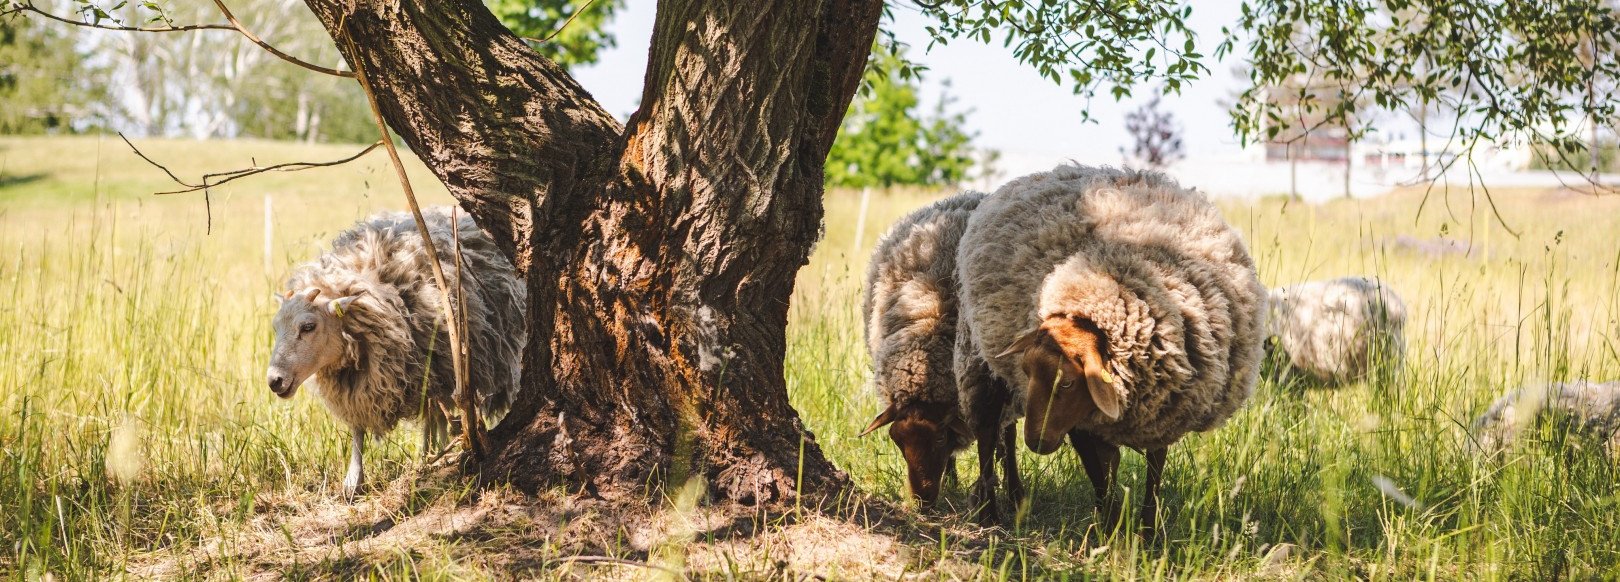 Schafe grasen auf einer Wiese im Kienbergpark unter einem Baum